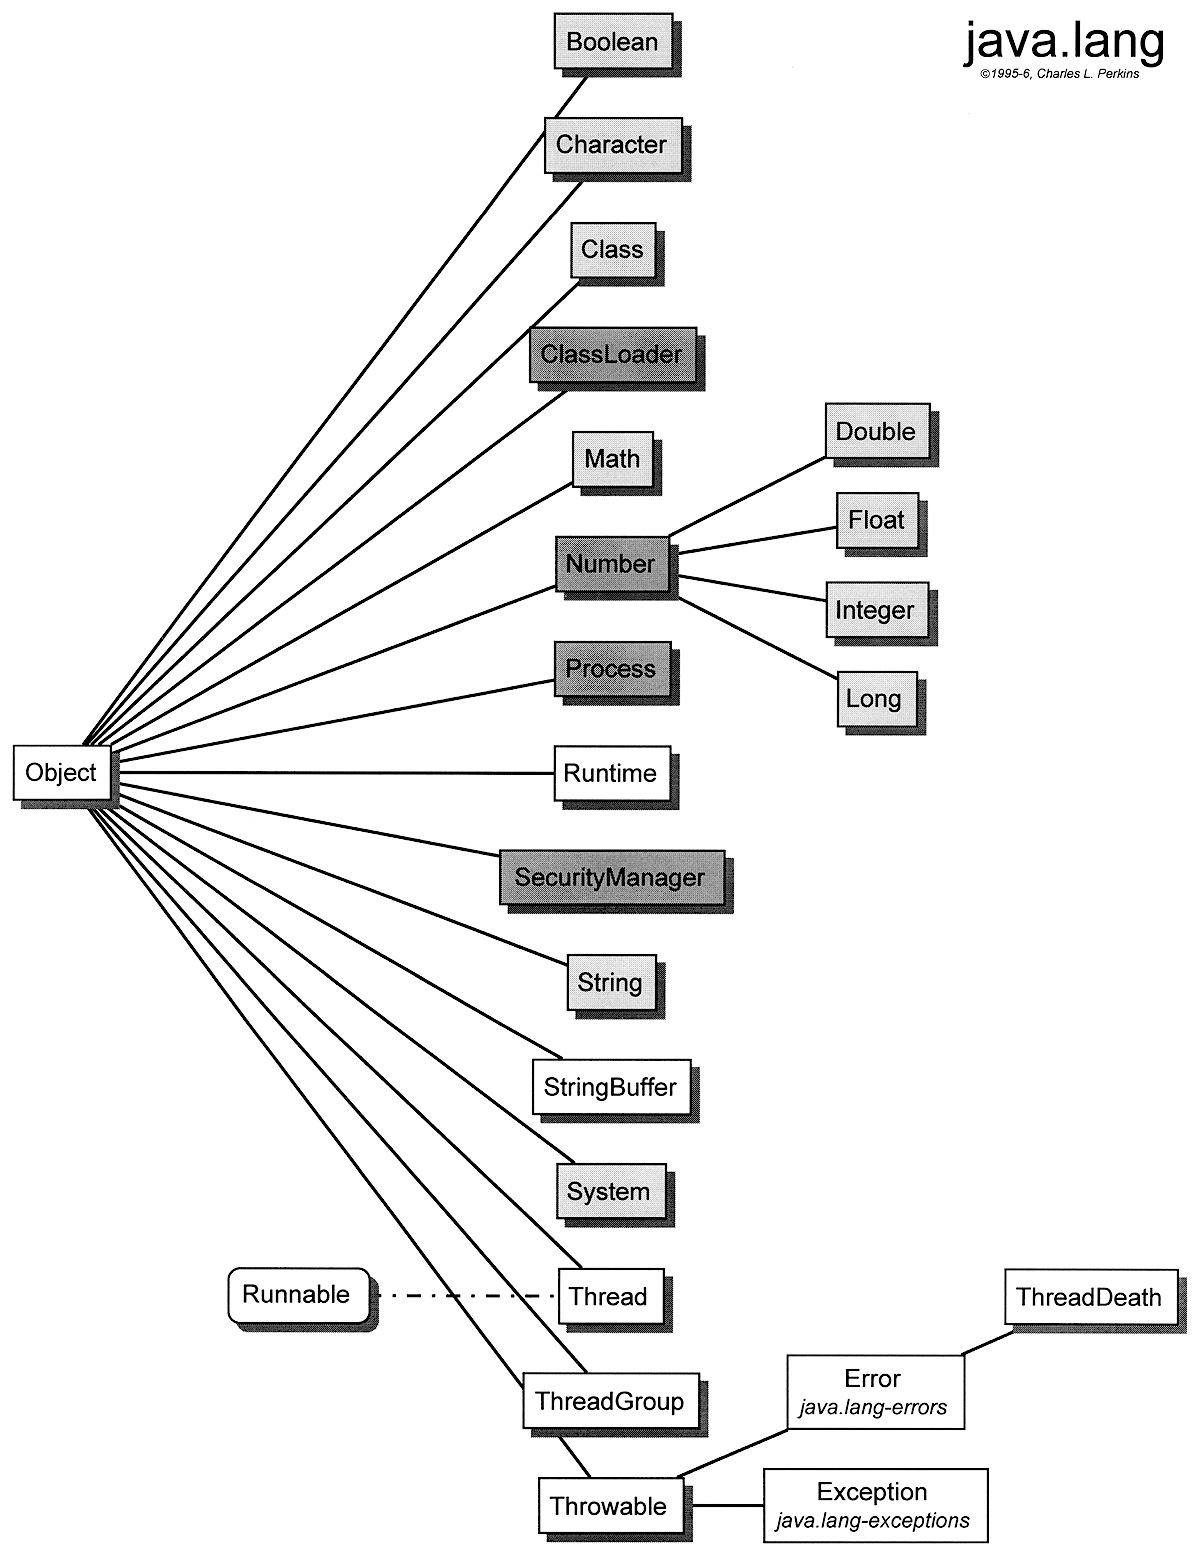 appendix B -- Class Hierarchy Diagrams